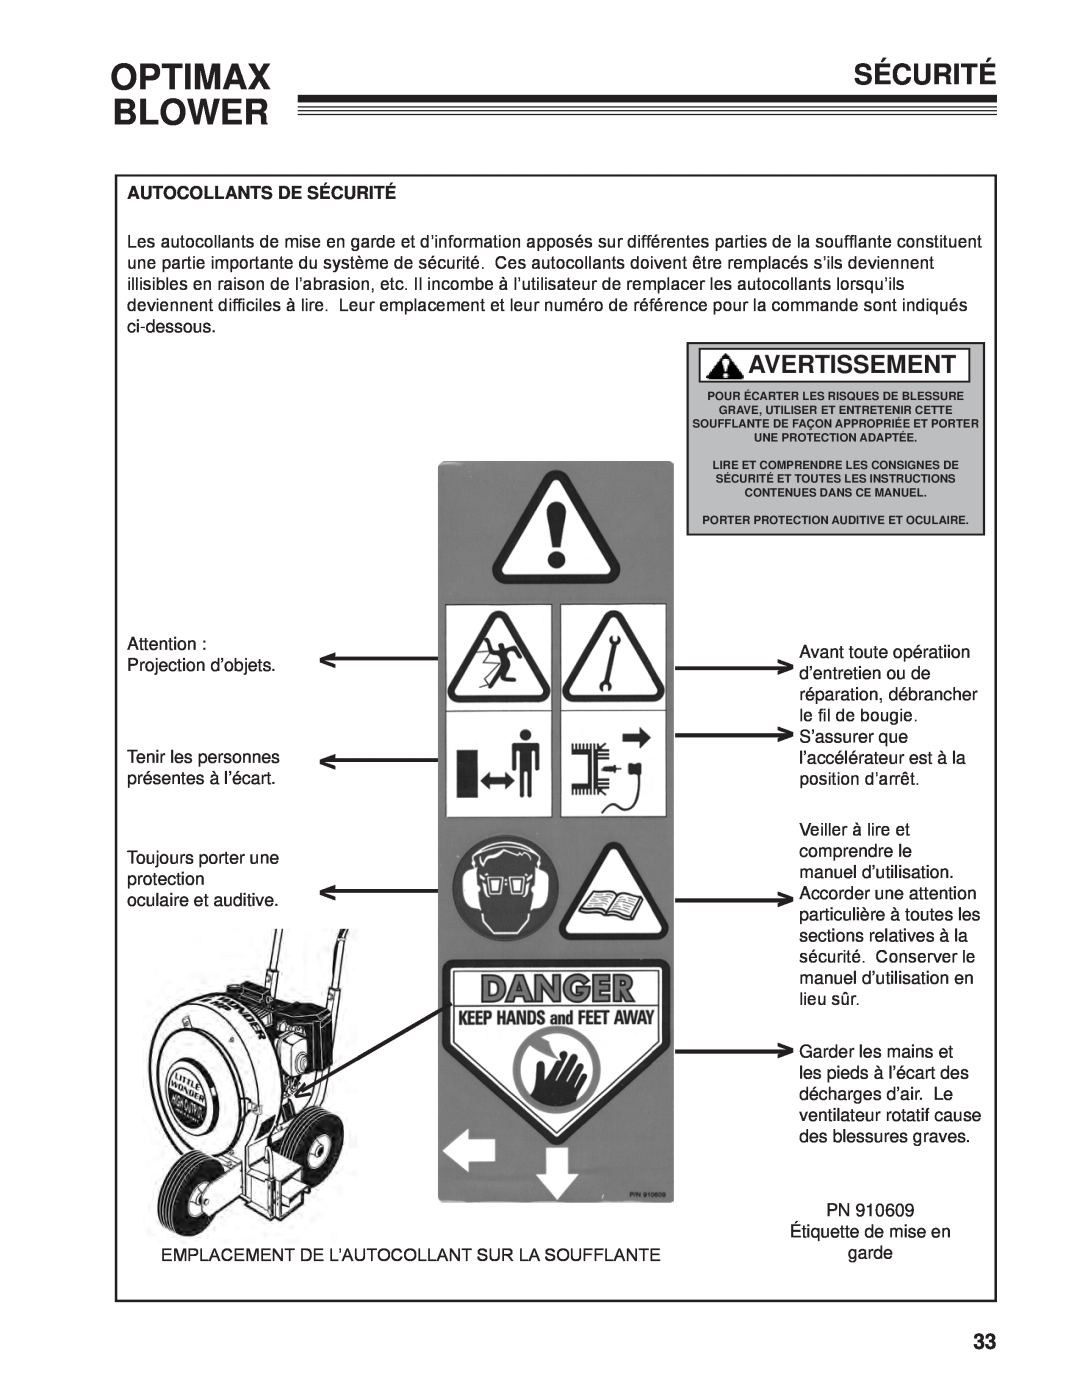 Little Wonder LB900-00-01 technical manual Optimax, Blower, Avertissement, Autocollants De Sécurité 